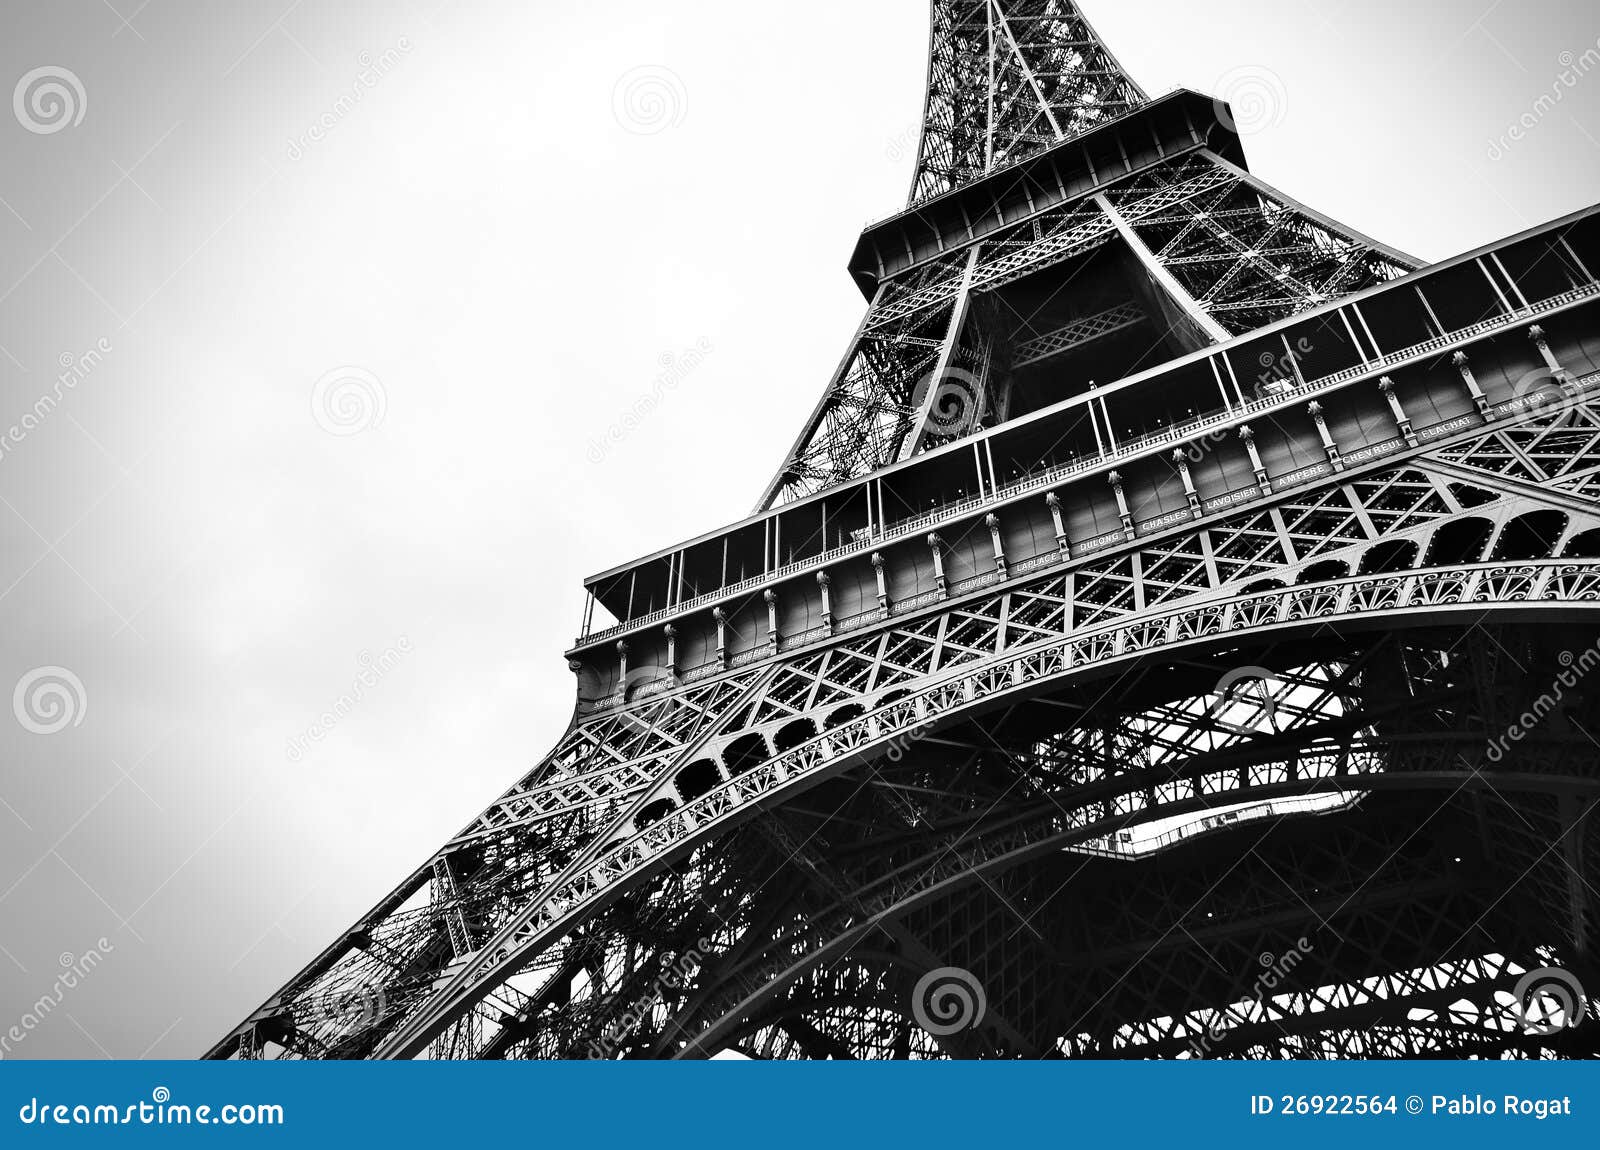 Bellezza In Bianco E Nero Della Torre Eiffel Fotografia Stock Immagine Di Eiffel Cartolina